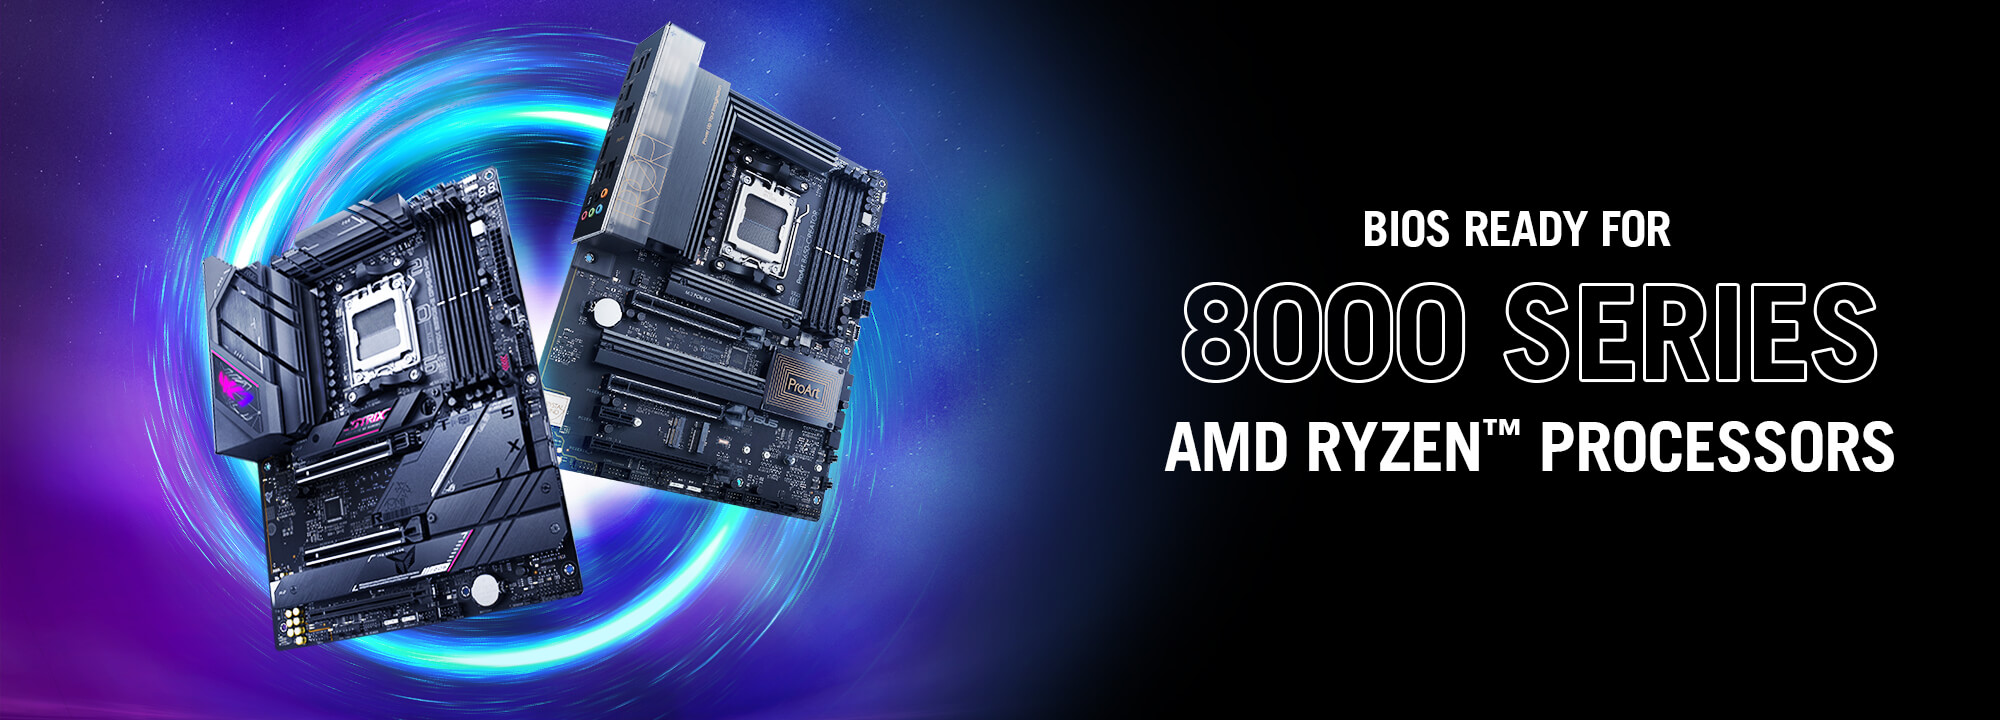 Afbeelding twee B650 moederborden met BIOS Ready voor 8000-serie AMD Ryzen™ processors